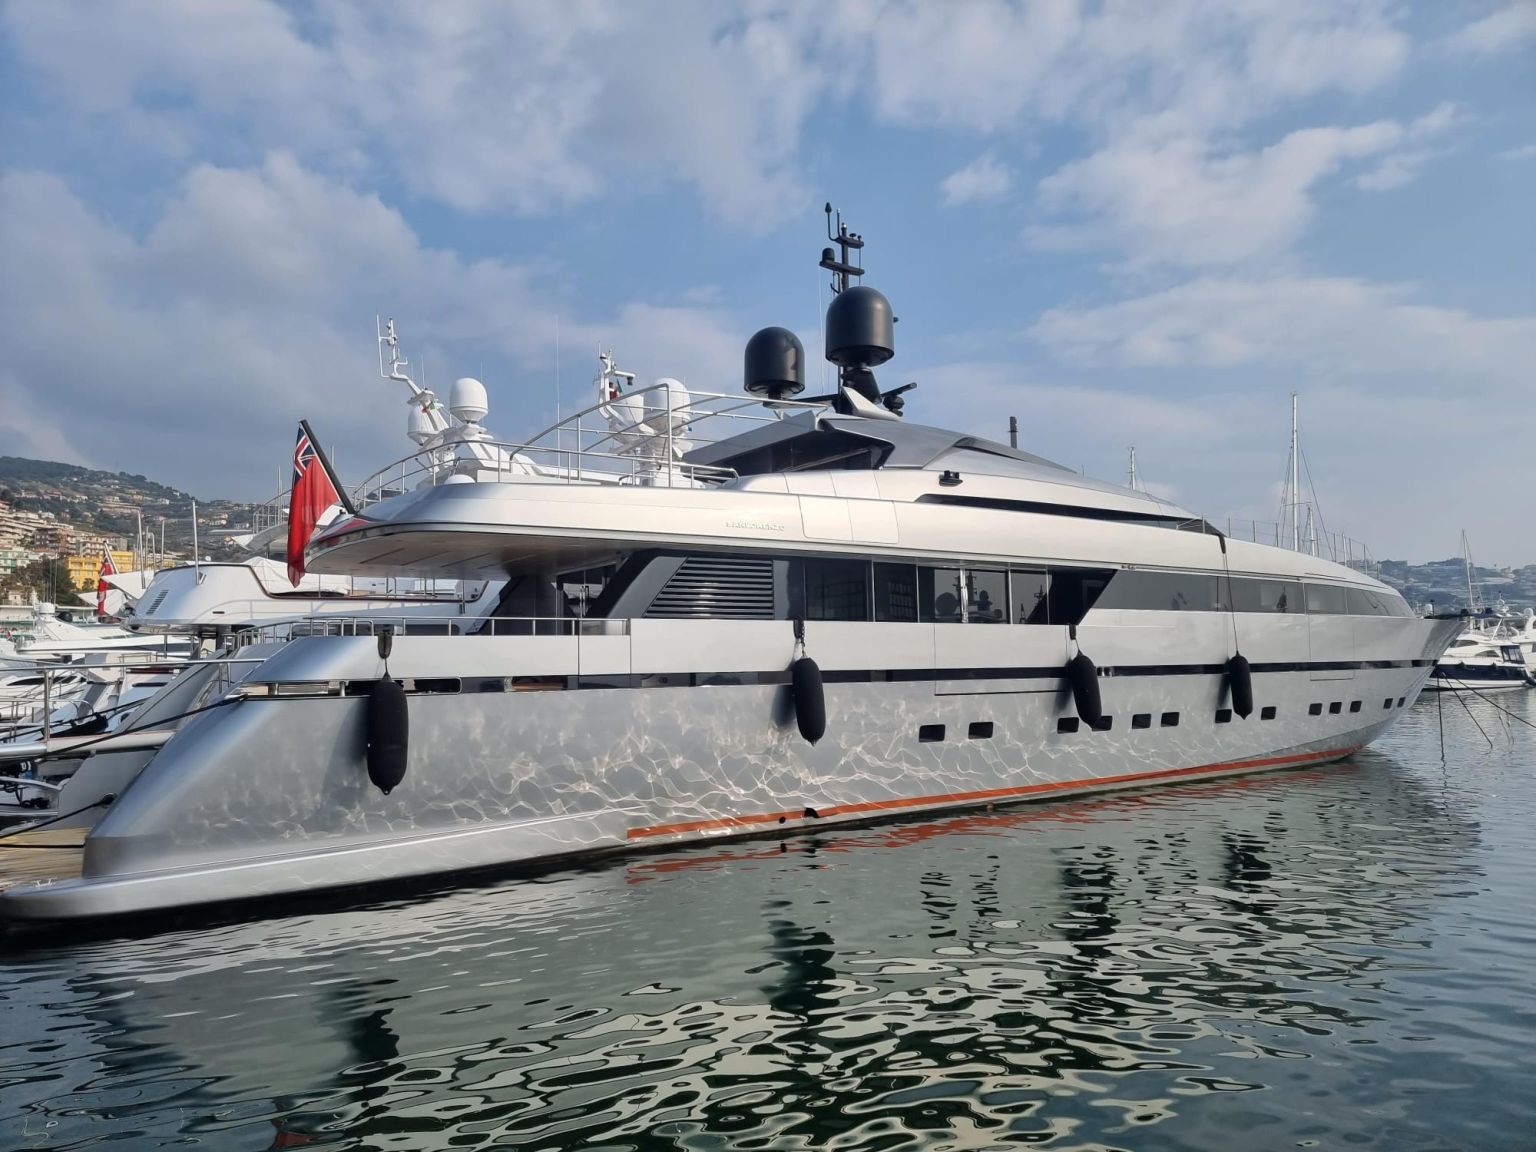 Ühed silmapaistvamad külmutatud varad on oligarhide luksusjahid. Pildil itaallaste poolt külmutatud megajaht Lena, mis kuulub oligarh Gennadi Timtšenkole.